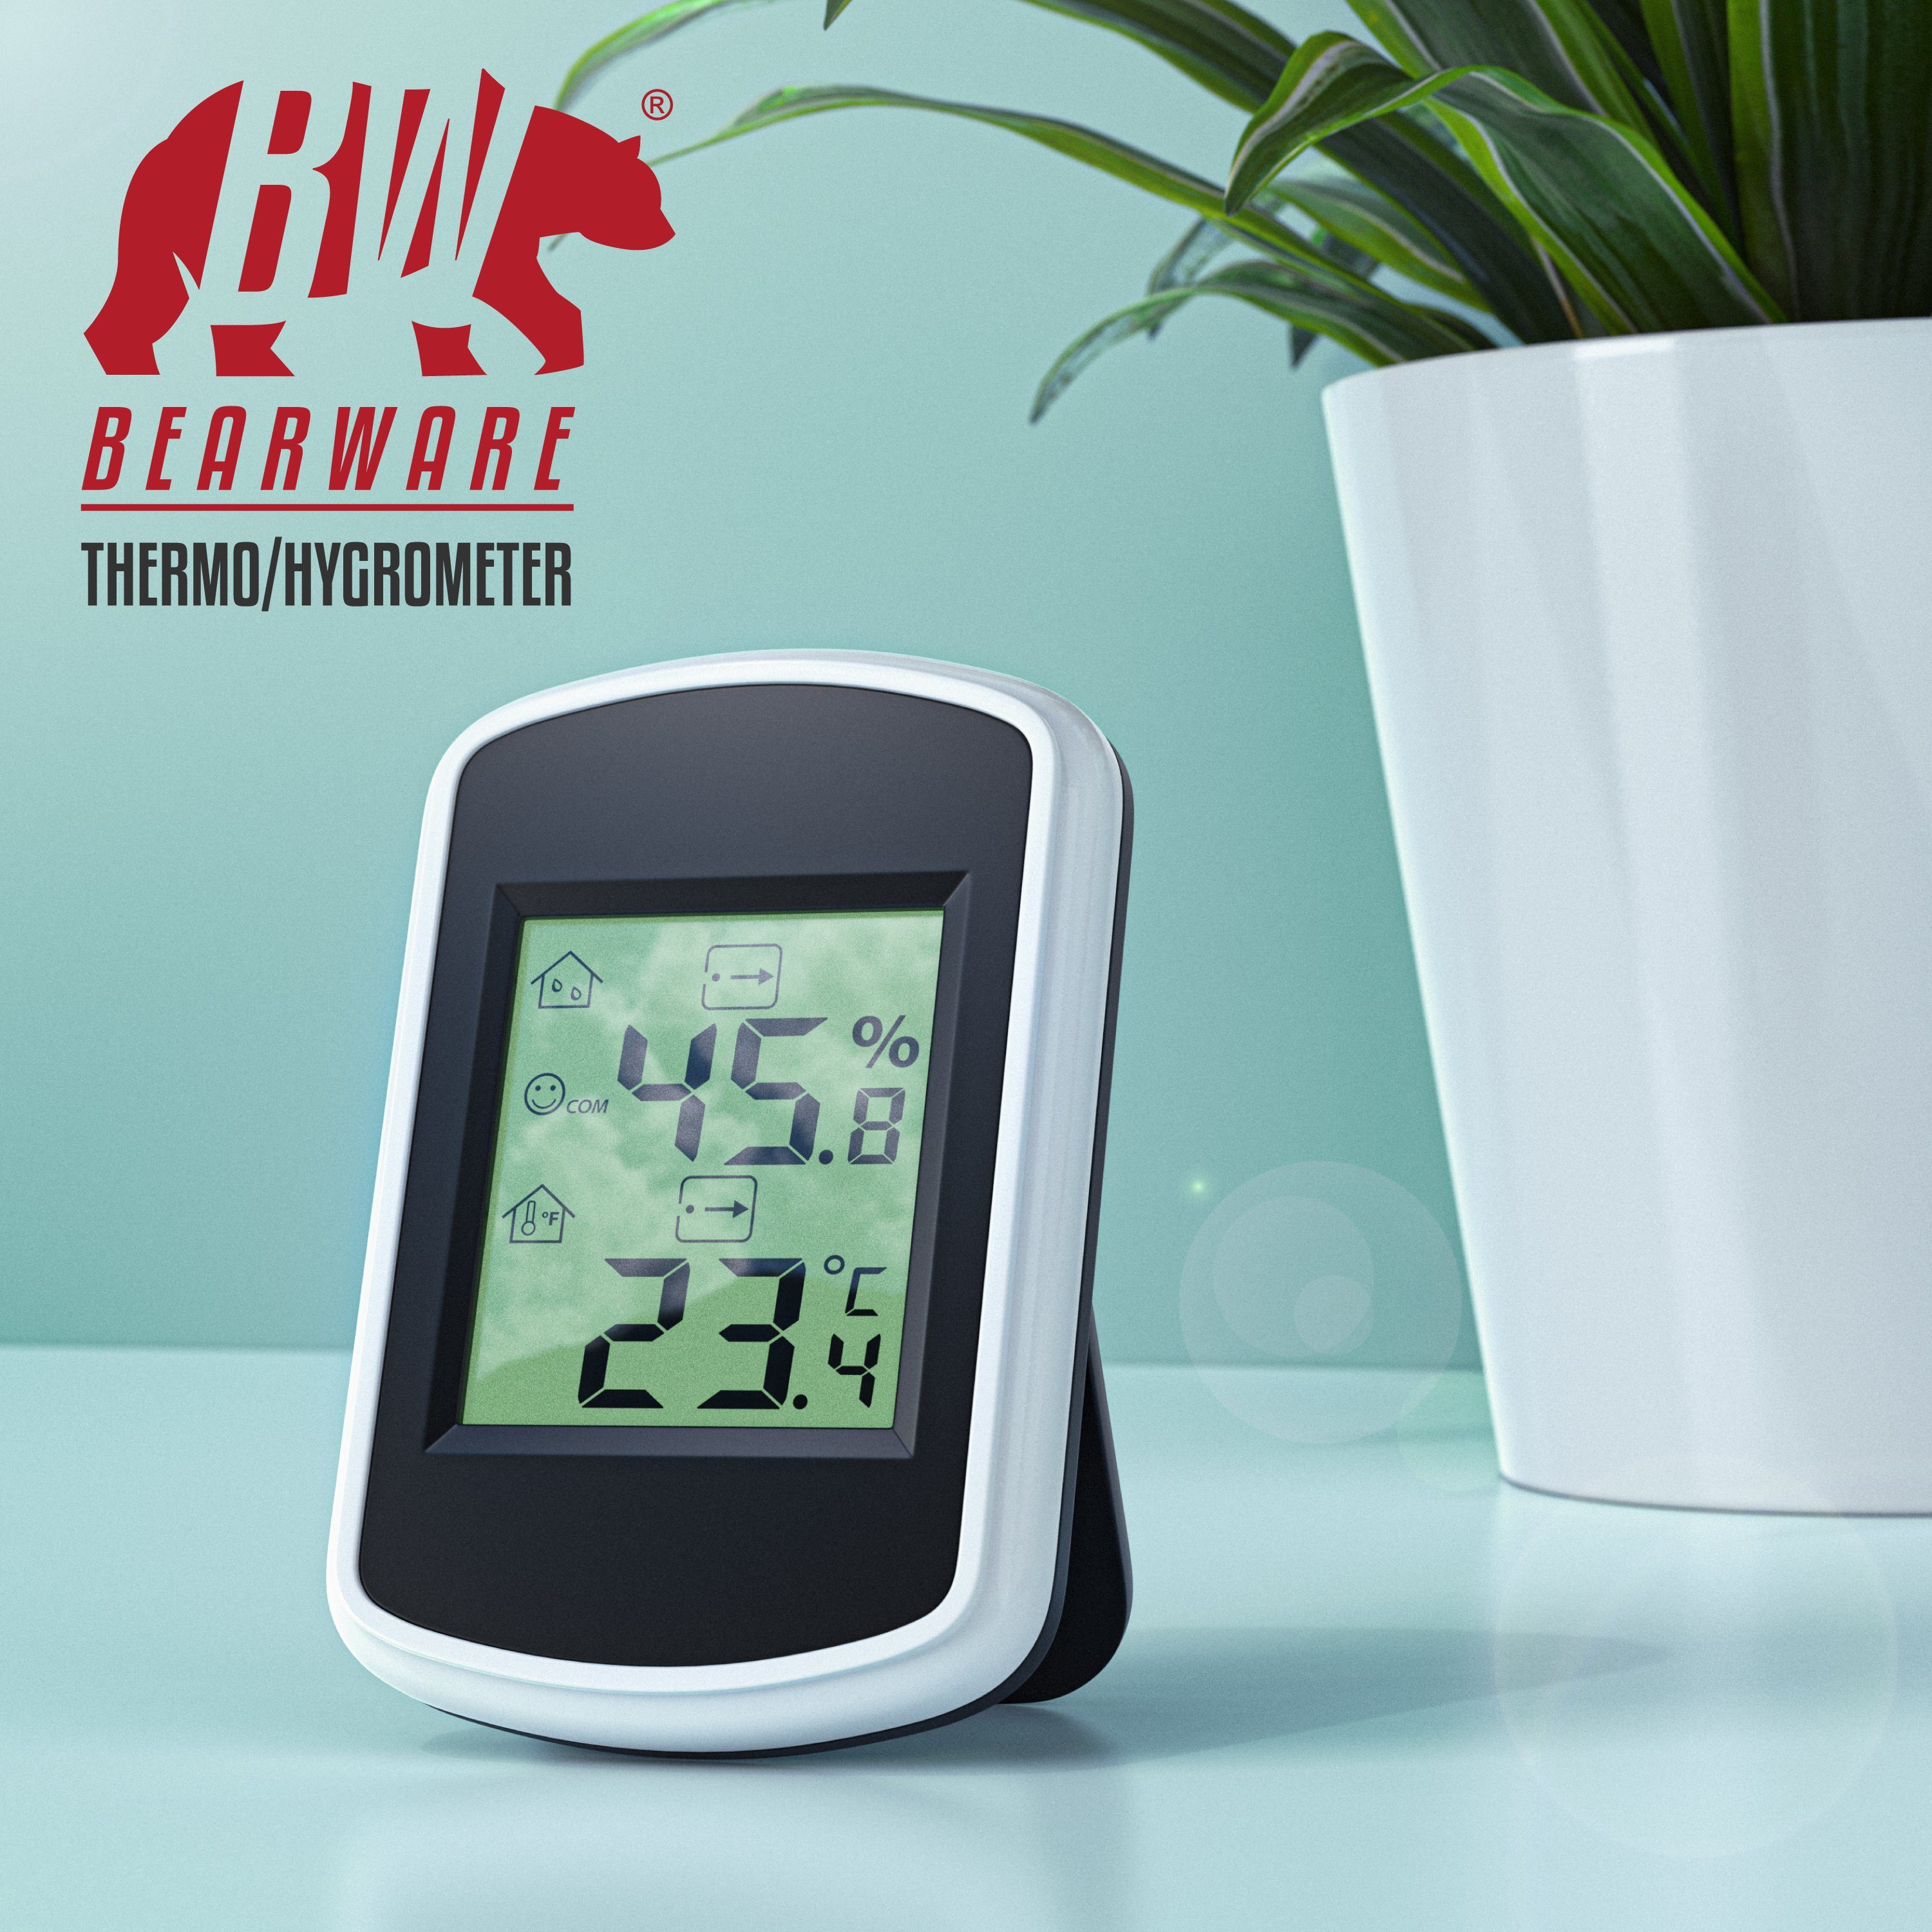 Temperatur (Haltemagneten, Hygrometer, BEARWARE Innenwetterstation Thermometer Messgerät) und Luftfeuchtigkeit